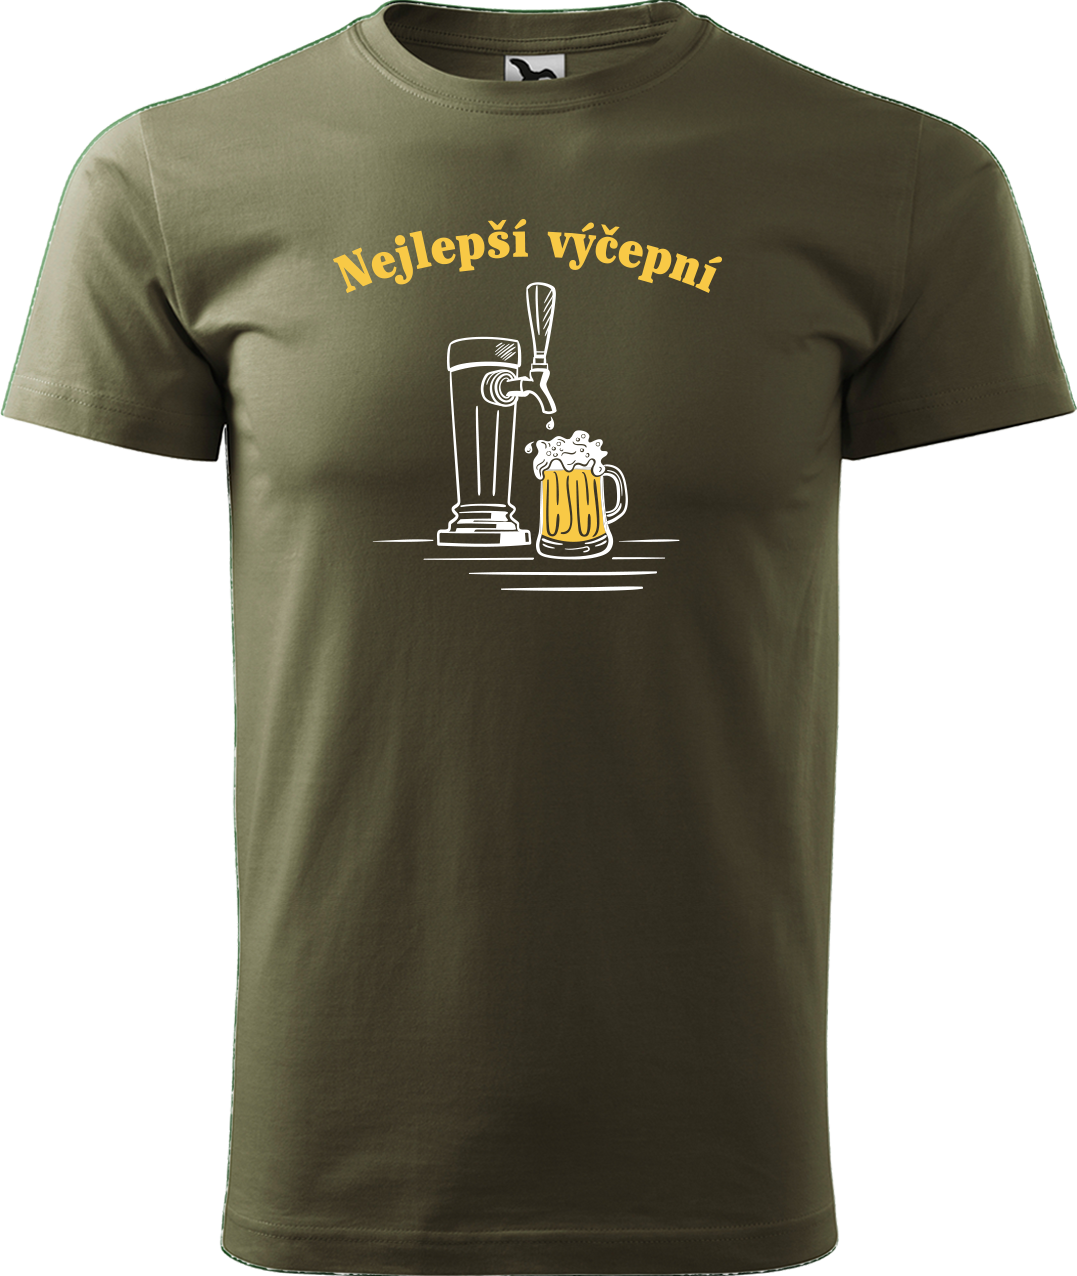 Pivní tričko - Nejlepší výčepní Velikost: M, Barva: Military (69)